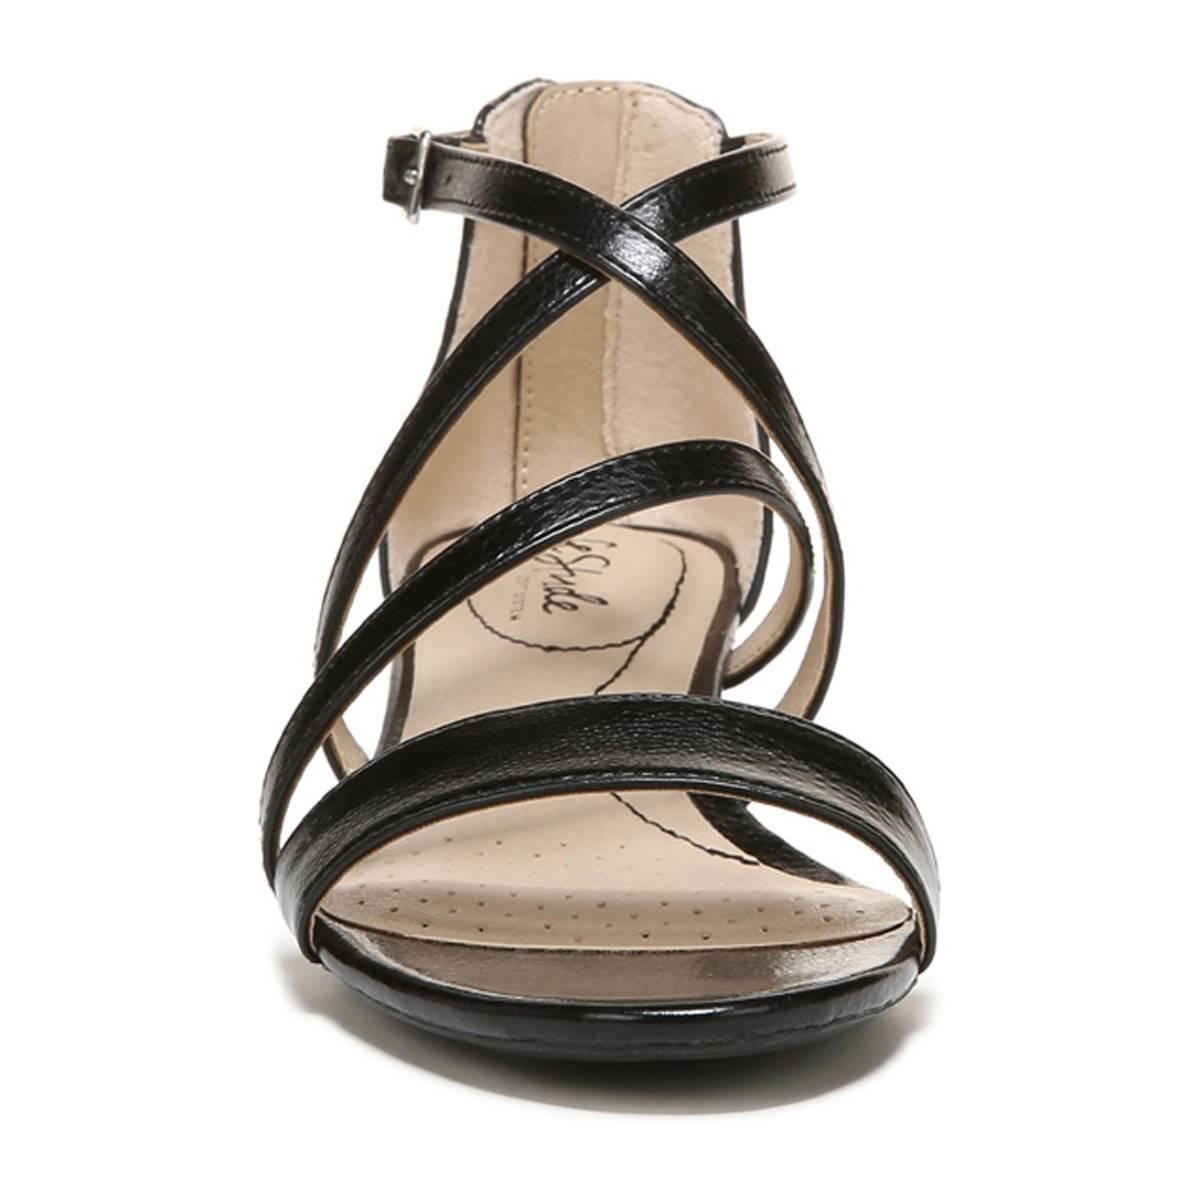 LifeStride Yolanda Wedge Sandal Product Image